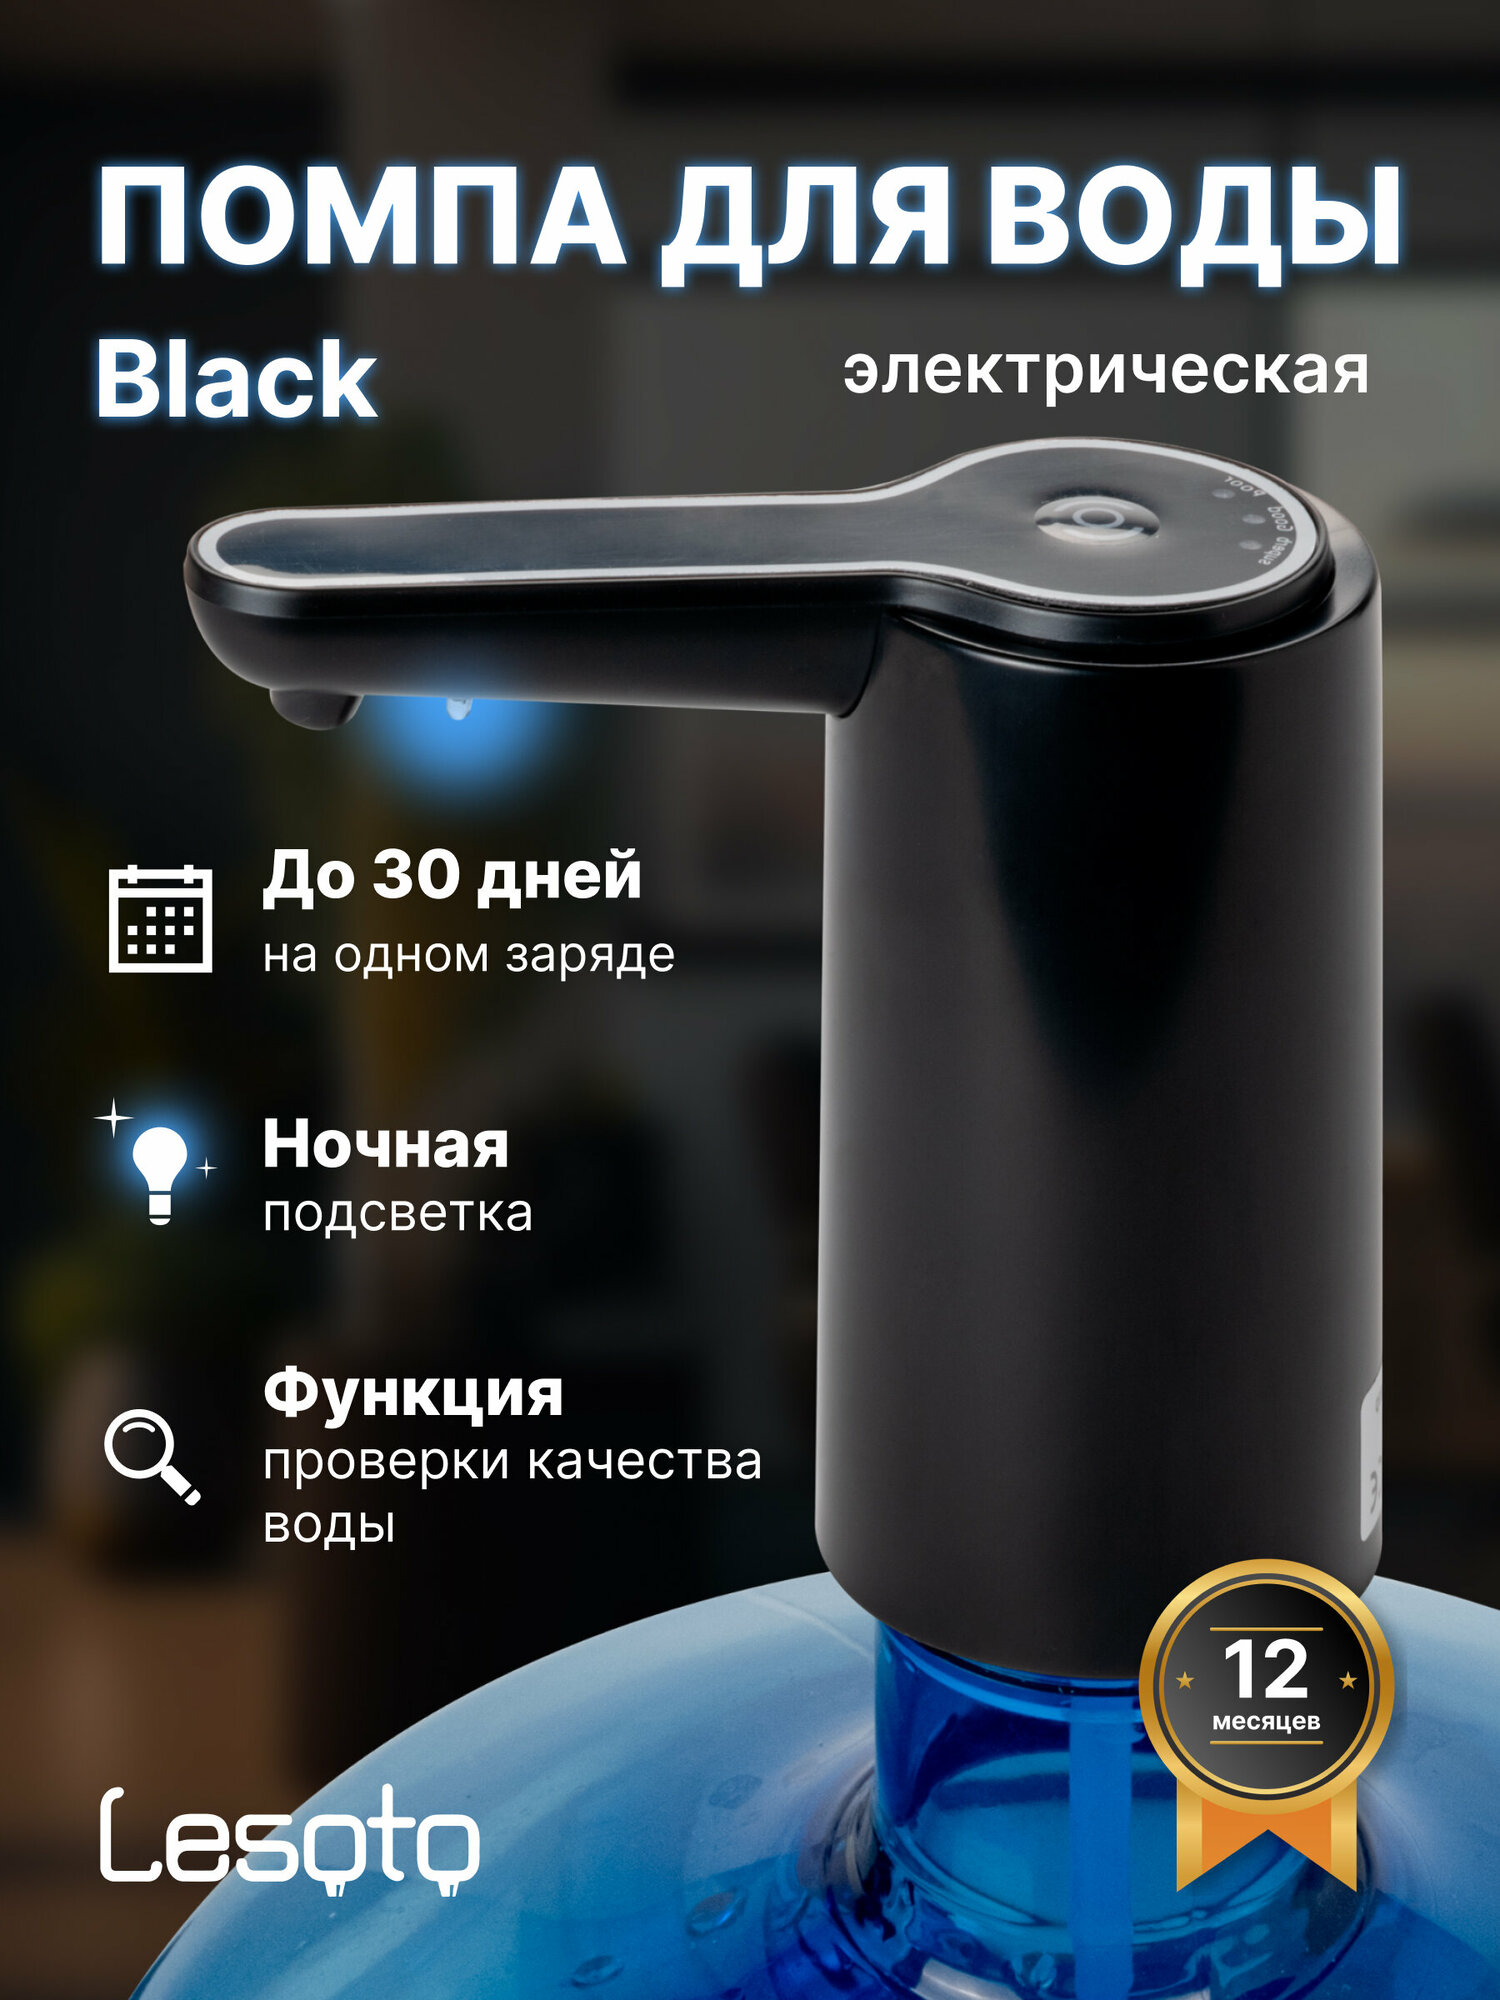 Помпа для воды LESOTO Black Электрическая аккумуляторная USB-помпа (насос)